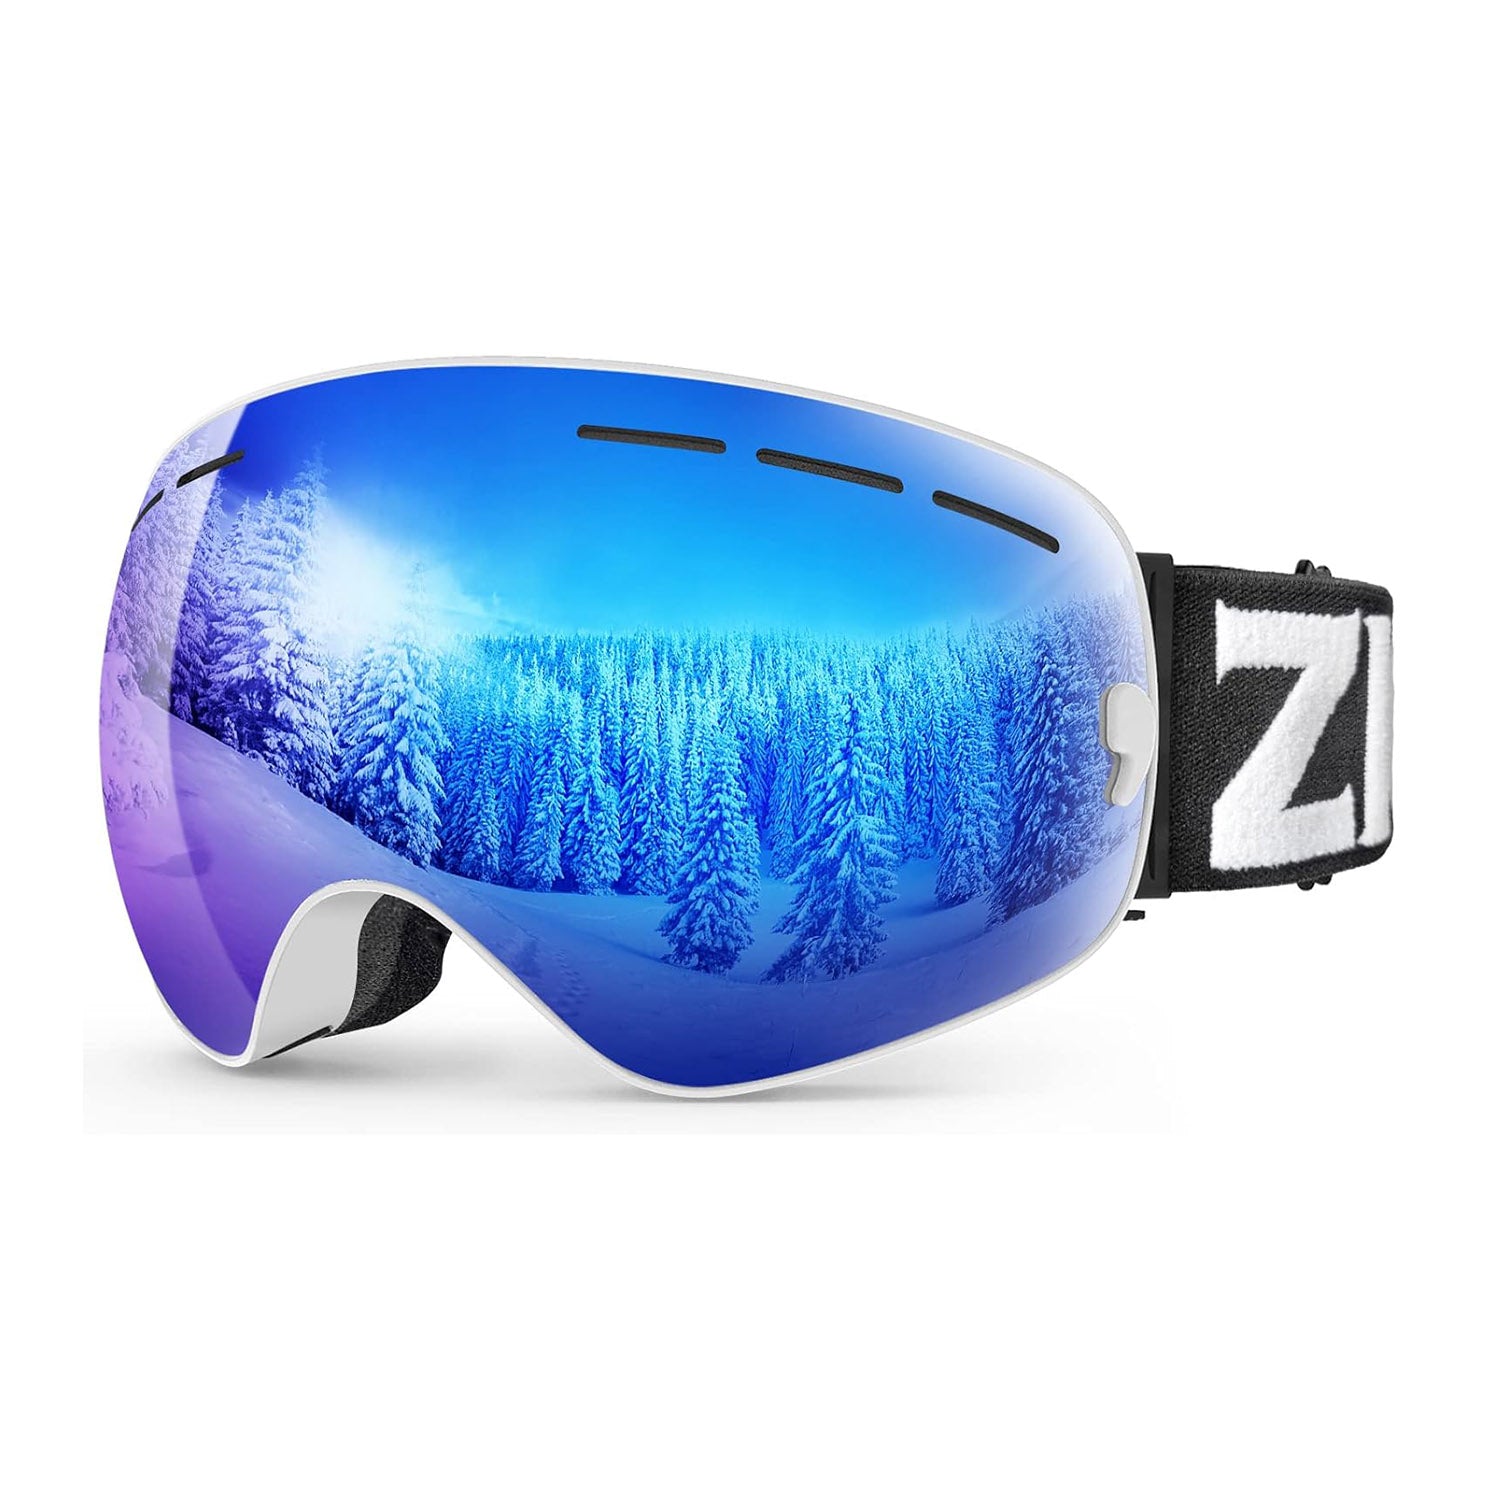 ZIONOR Lagopus Ski Snowboard Goggles UV Protection Anti-fog Snow Goggles